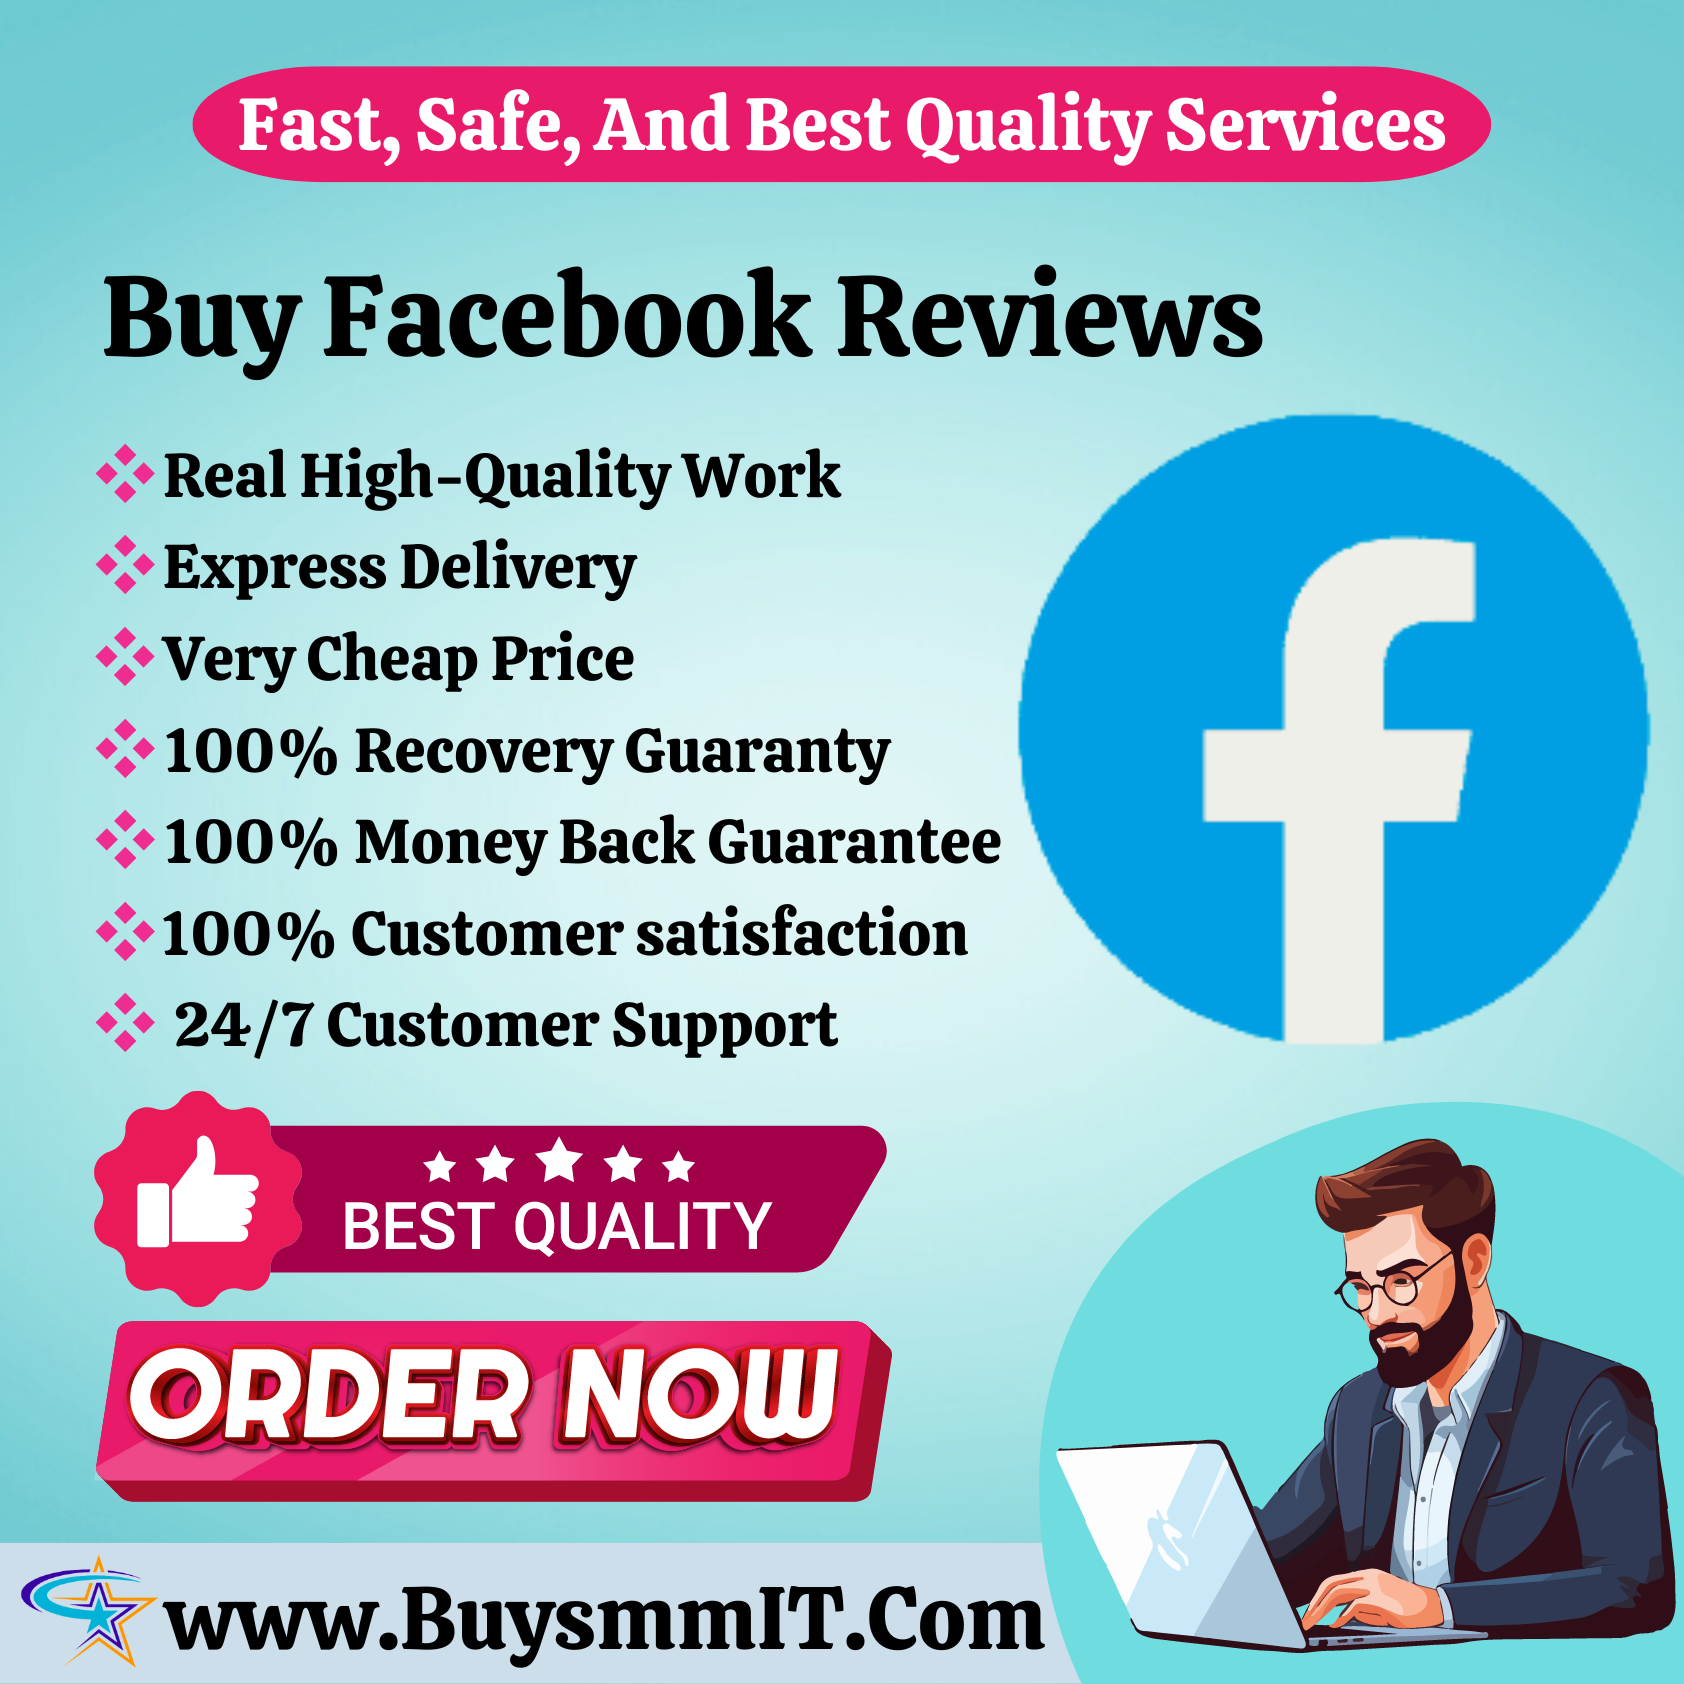 Buy Facebook Reviews - 100% Satisfaction Guaranteed